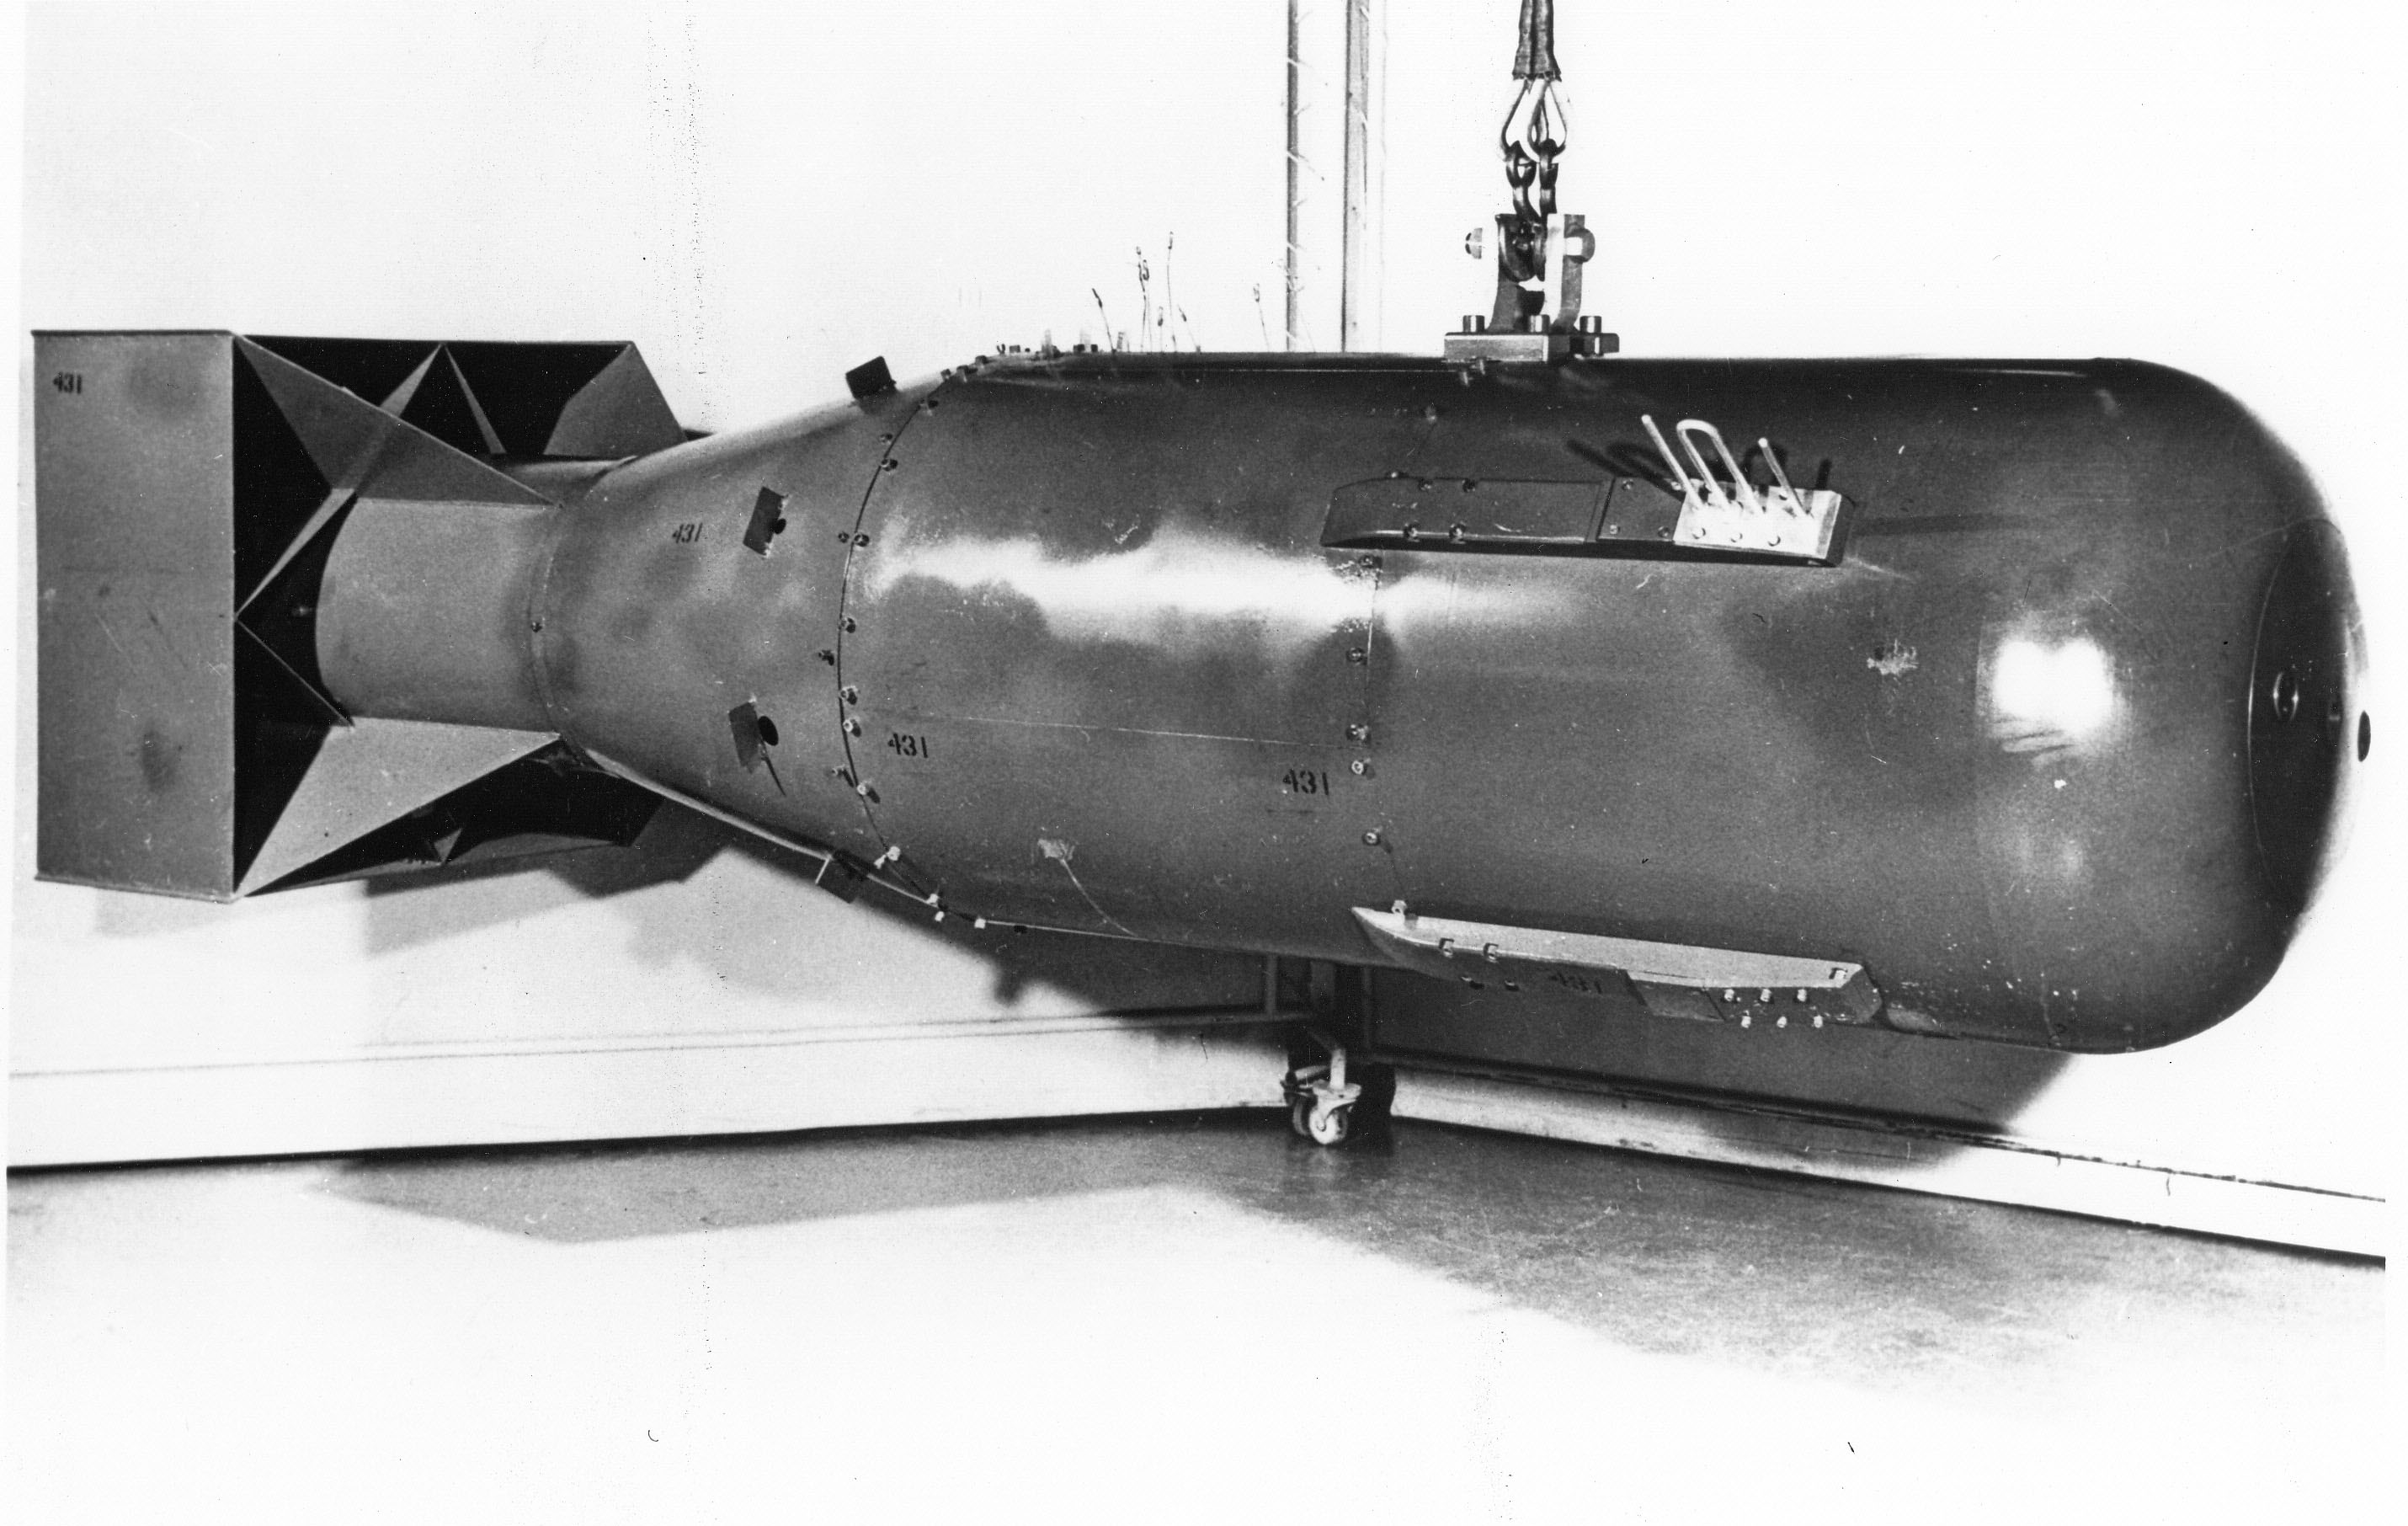 Photographie d'une maquette de l'arme nucléaire Little Boy larguée sur Hiroshima, au Japon, en août 1945. © Archives nationales des États-Unis, Wikimedia Commons. Domaine public